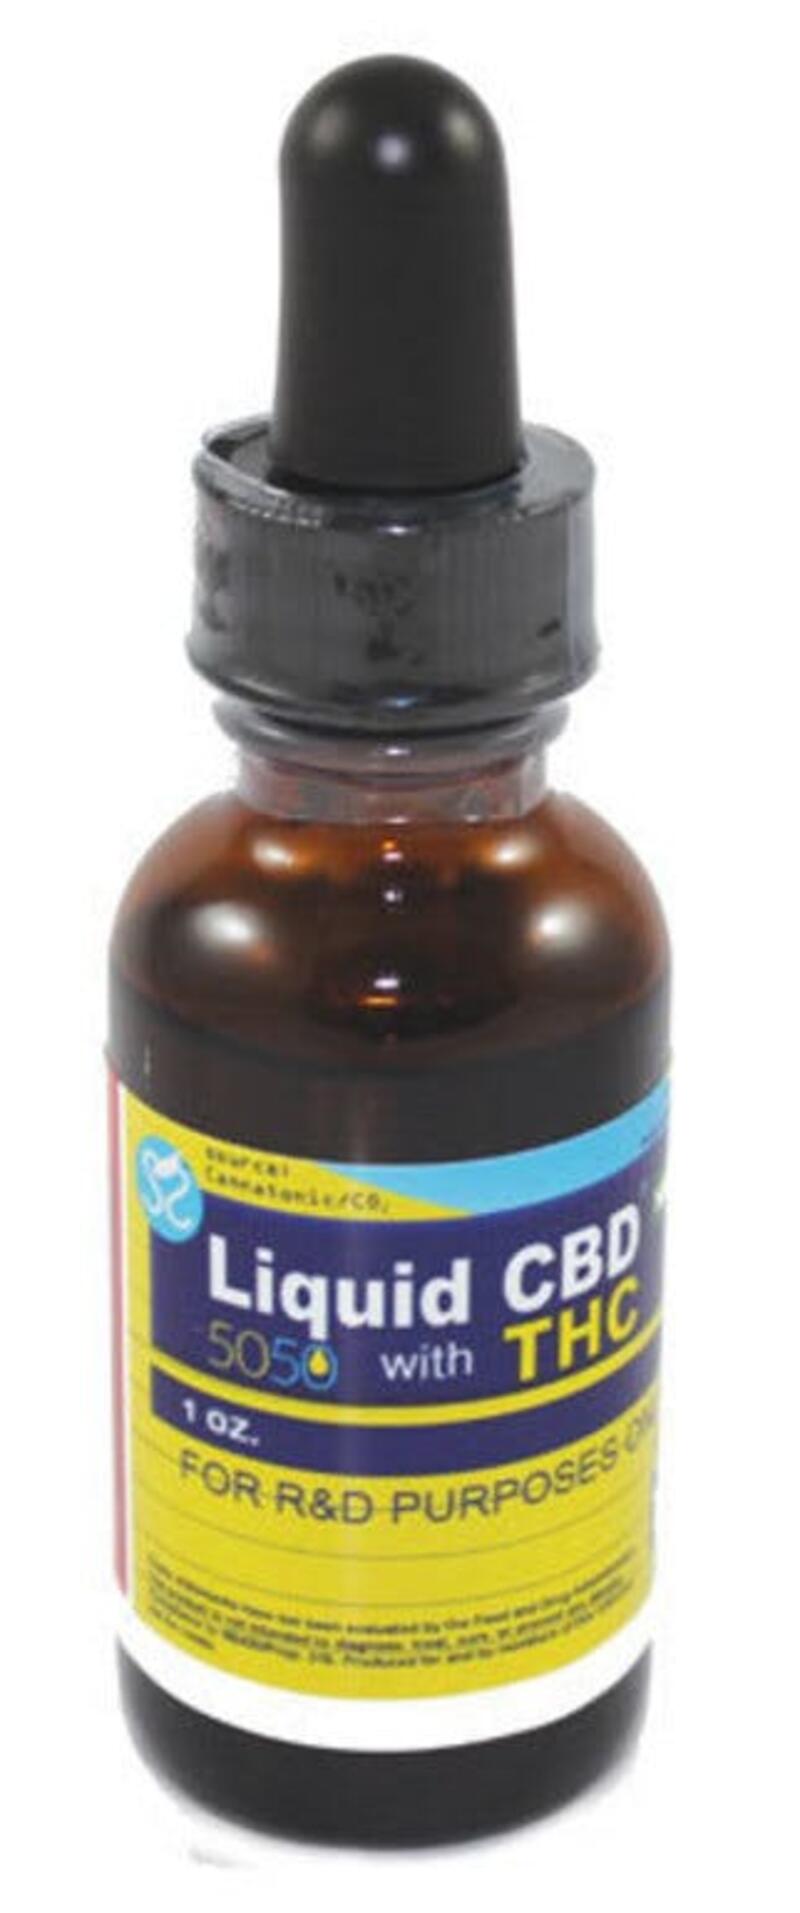 Liquid CBD plus THC 1:1